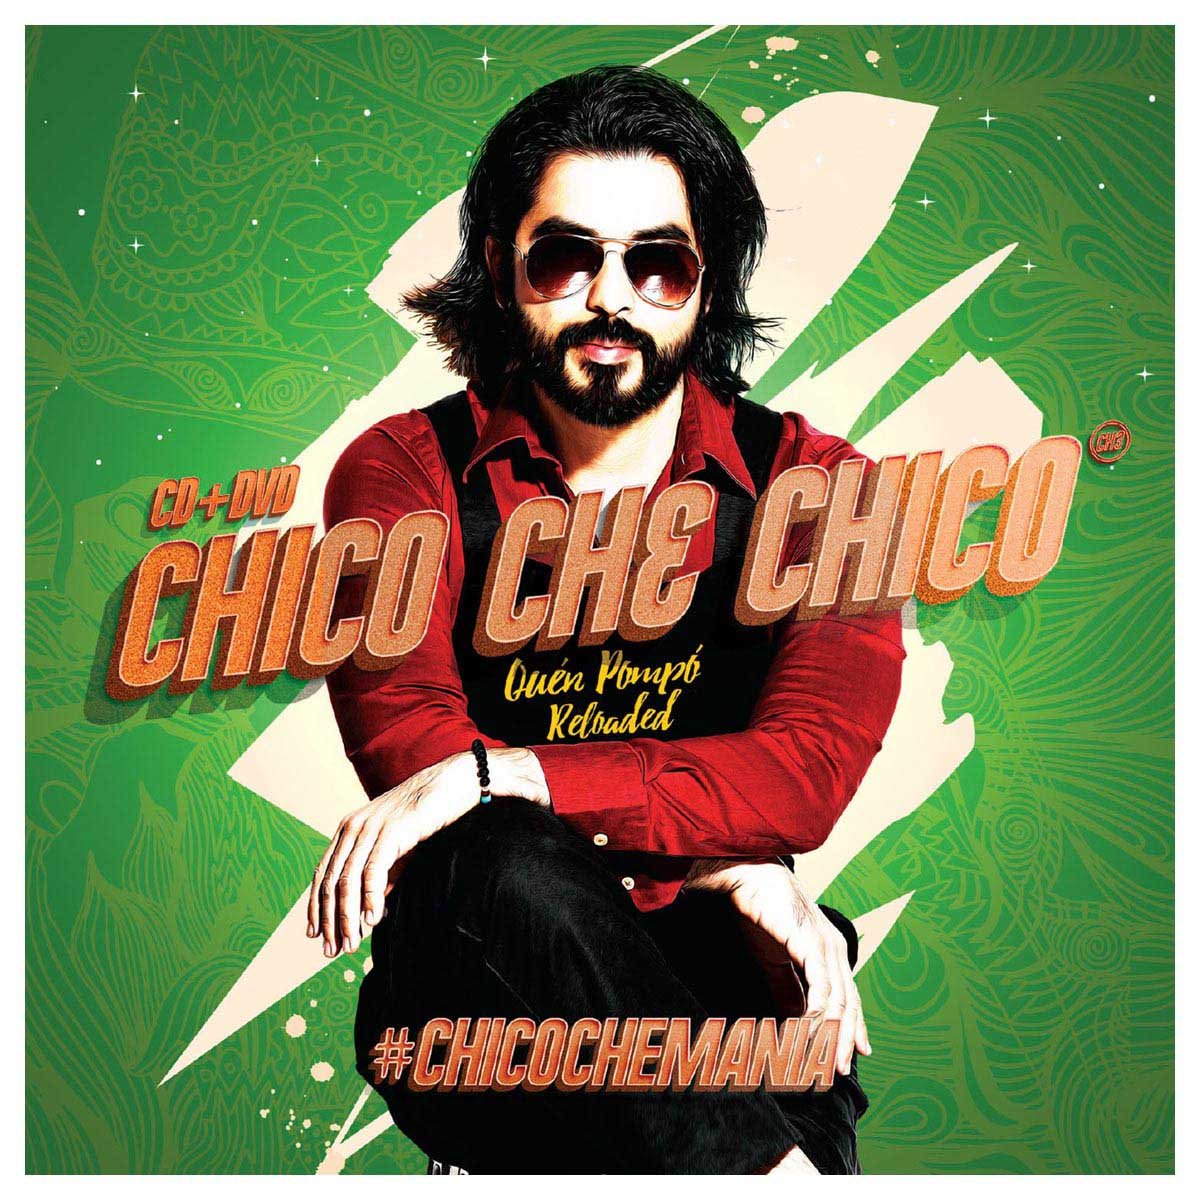 Cd + Dvd Chico Che Chico Quien Pompo Reloaded